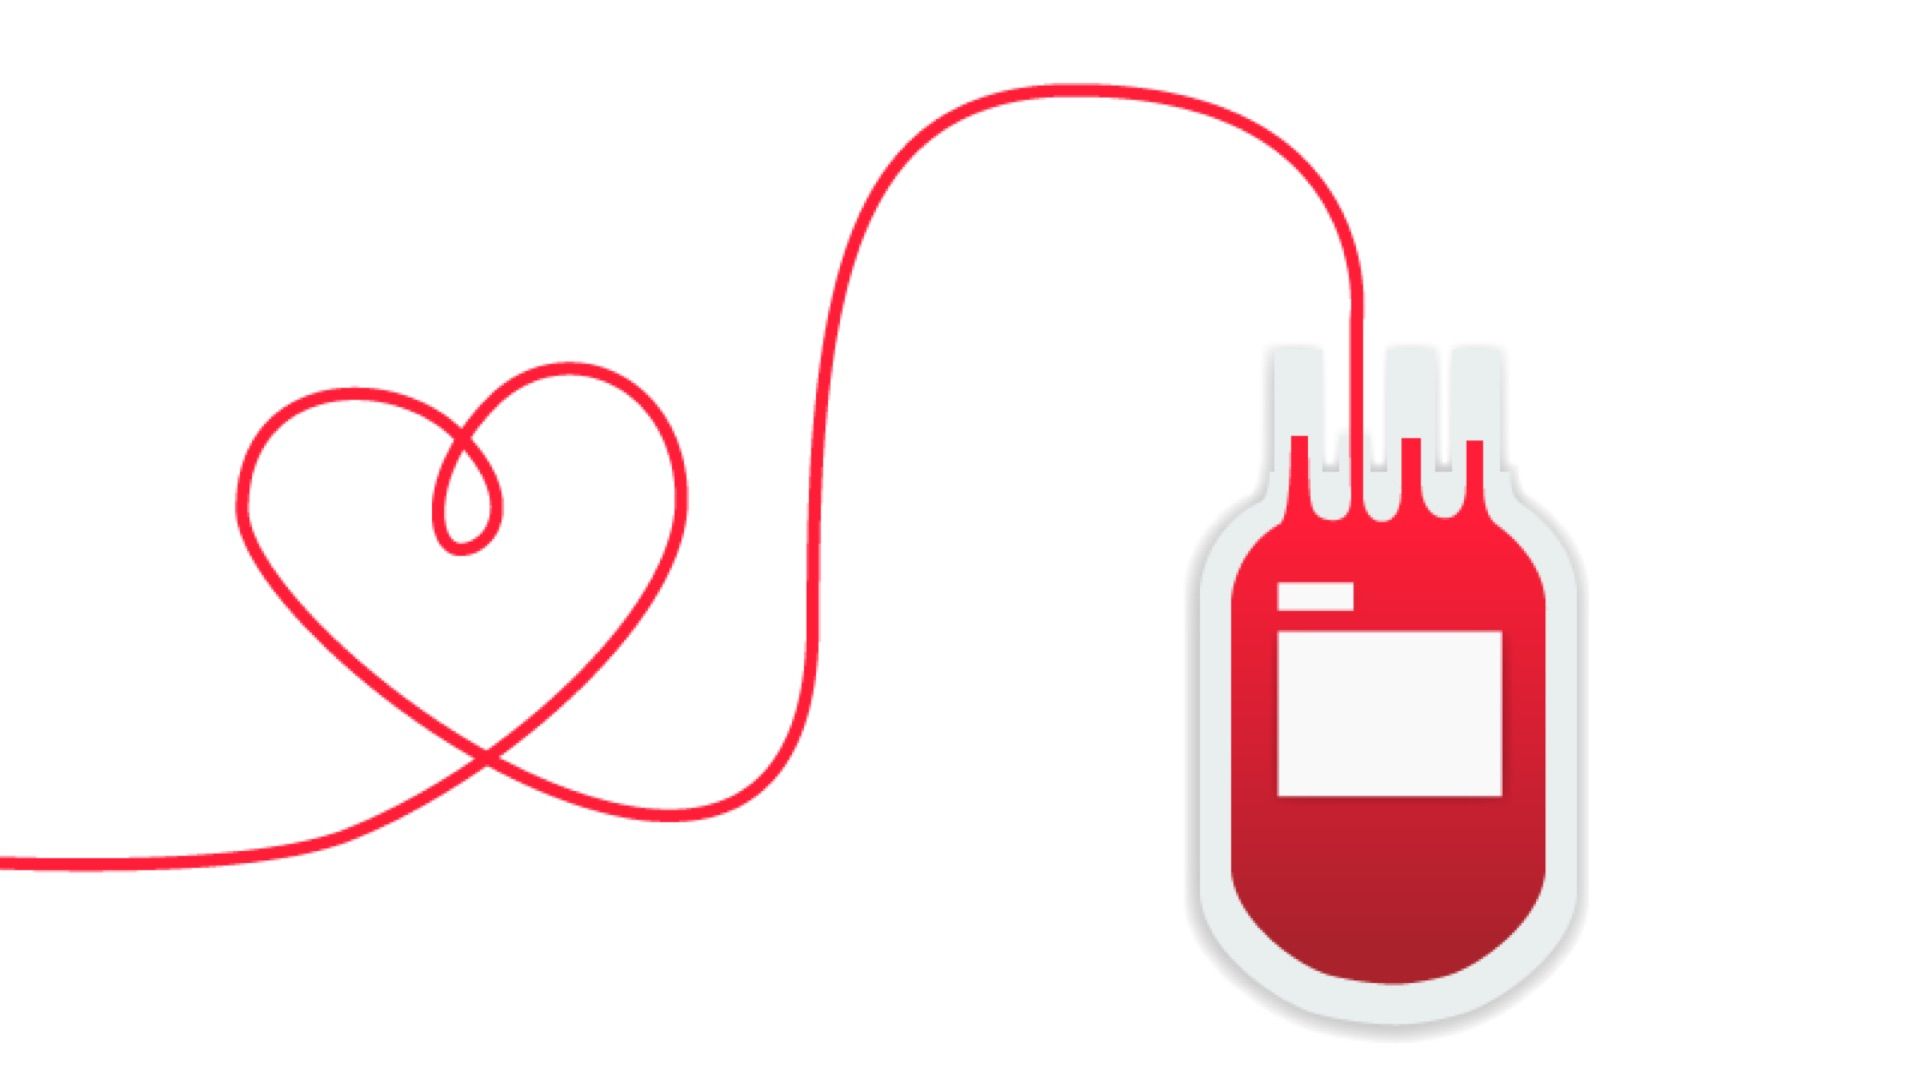 Переливание крови спасло жизнь. Эмблема донорства. Донорство картинки. Донорство крови. Донорство без фона.